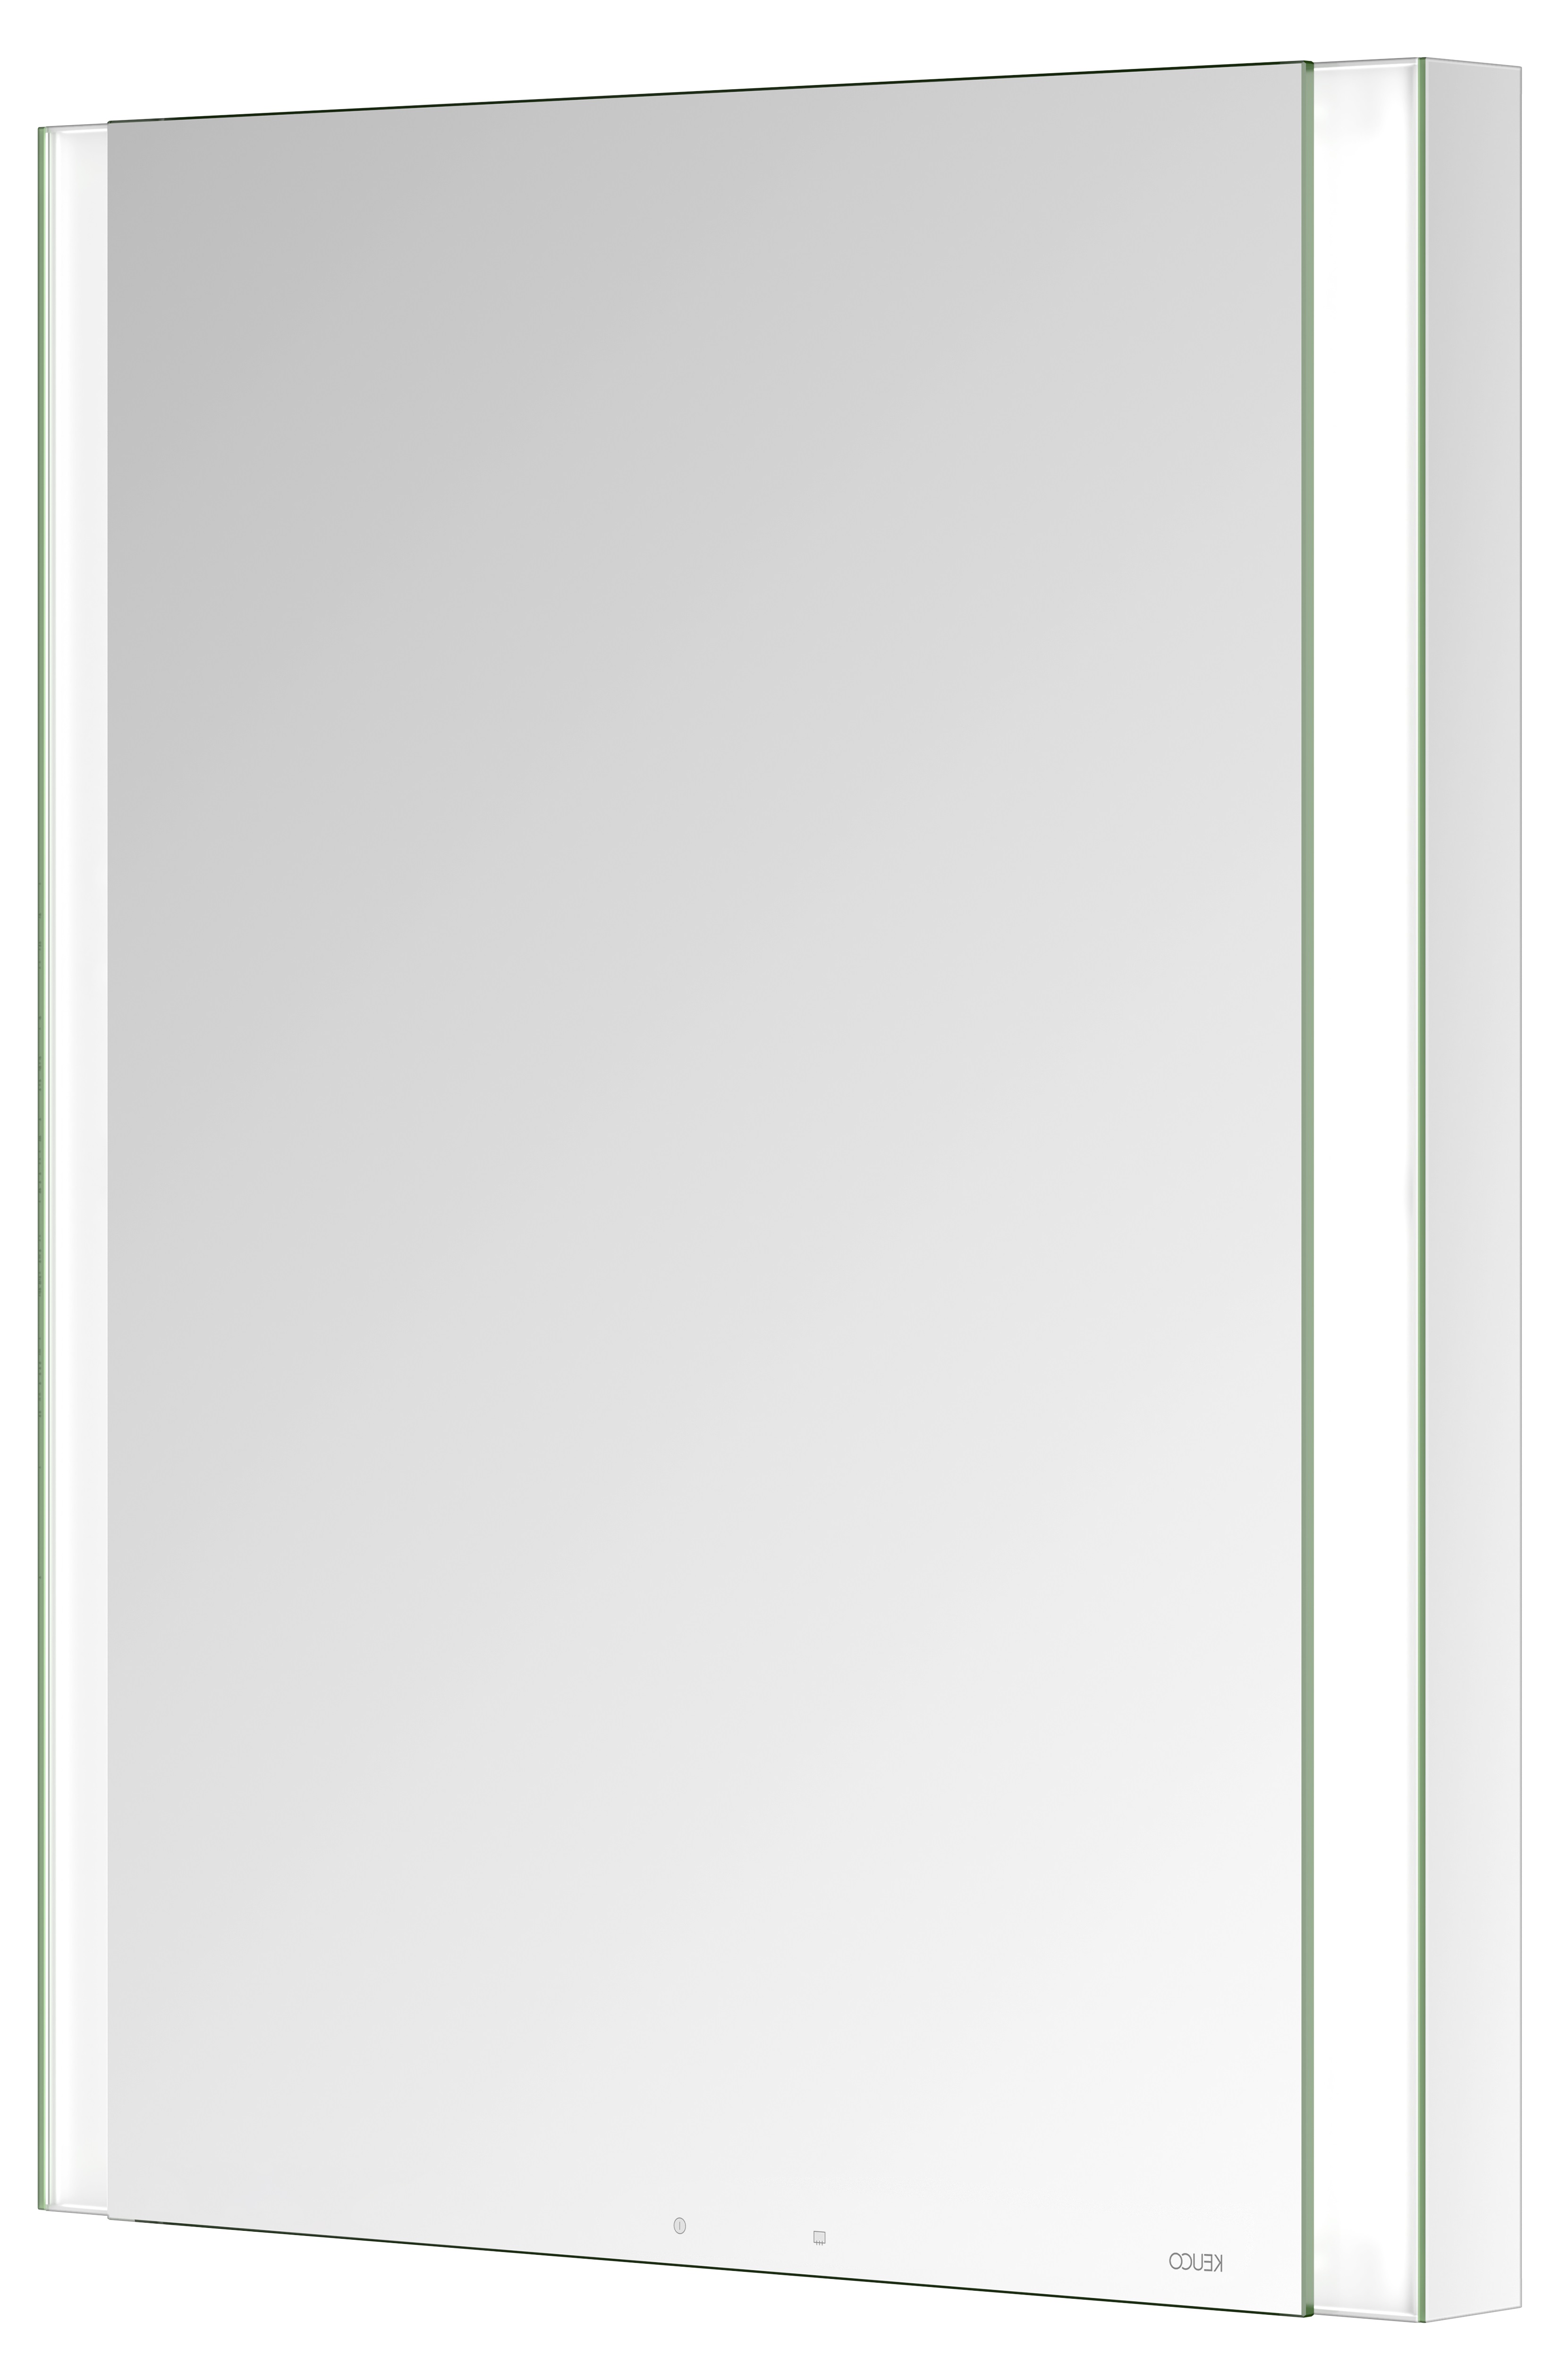 Правый зеркальный шкаф с подсветкой и подогревом для встраиваемого монтажа KEUCO Somaris 14511 001101 115 мм х 600 мм х 710 мм, с 1 поворотной дверцей, цвет корпуса Зеркальный